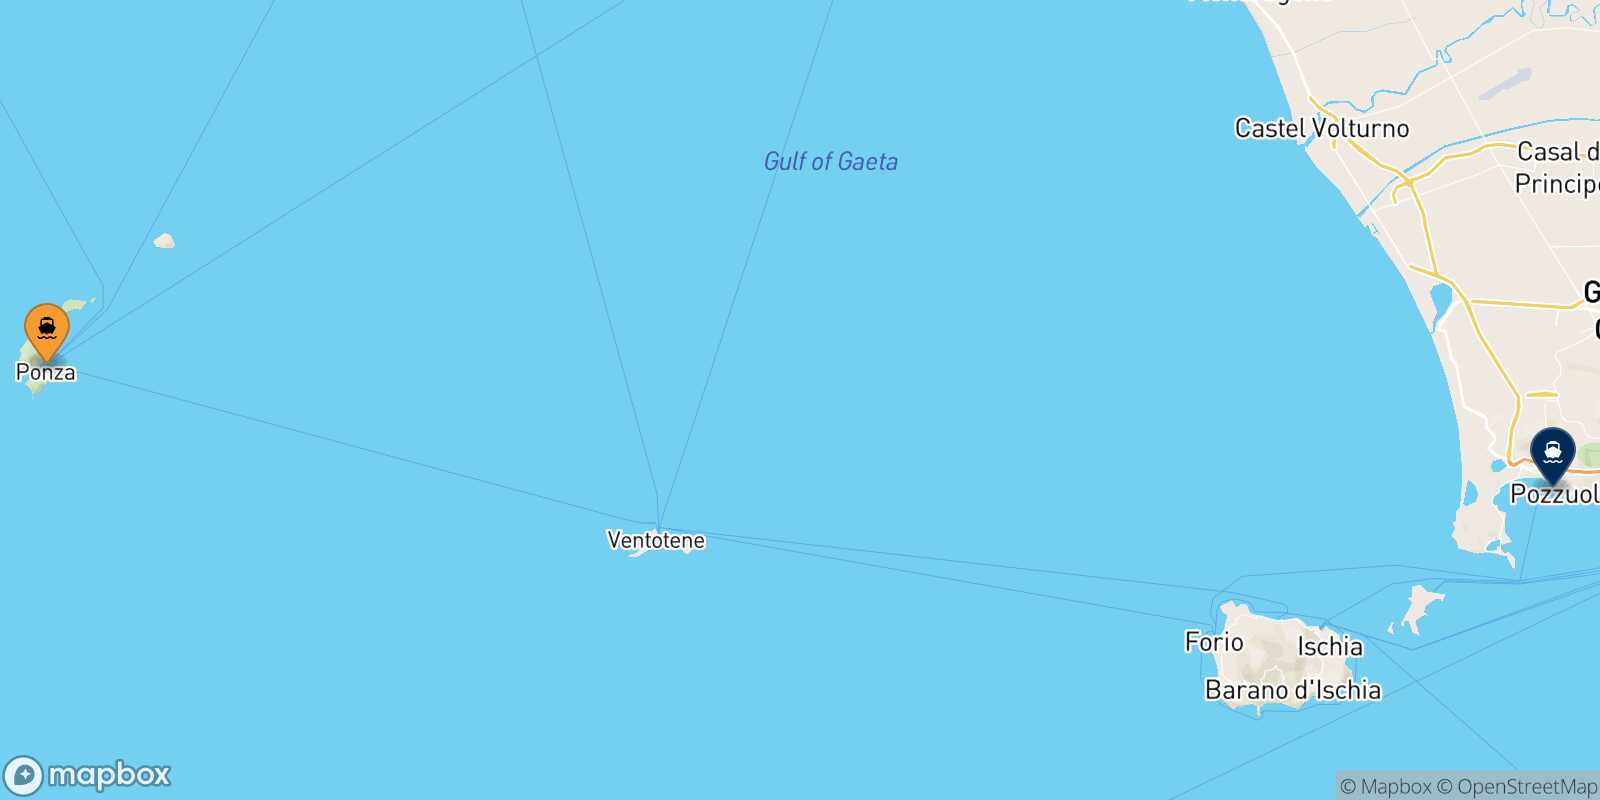 Mappa della rotta Ponza Casamicciola (Ischia)